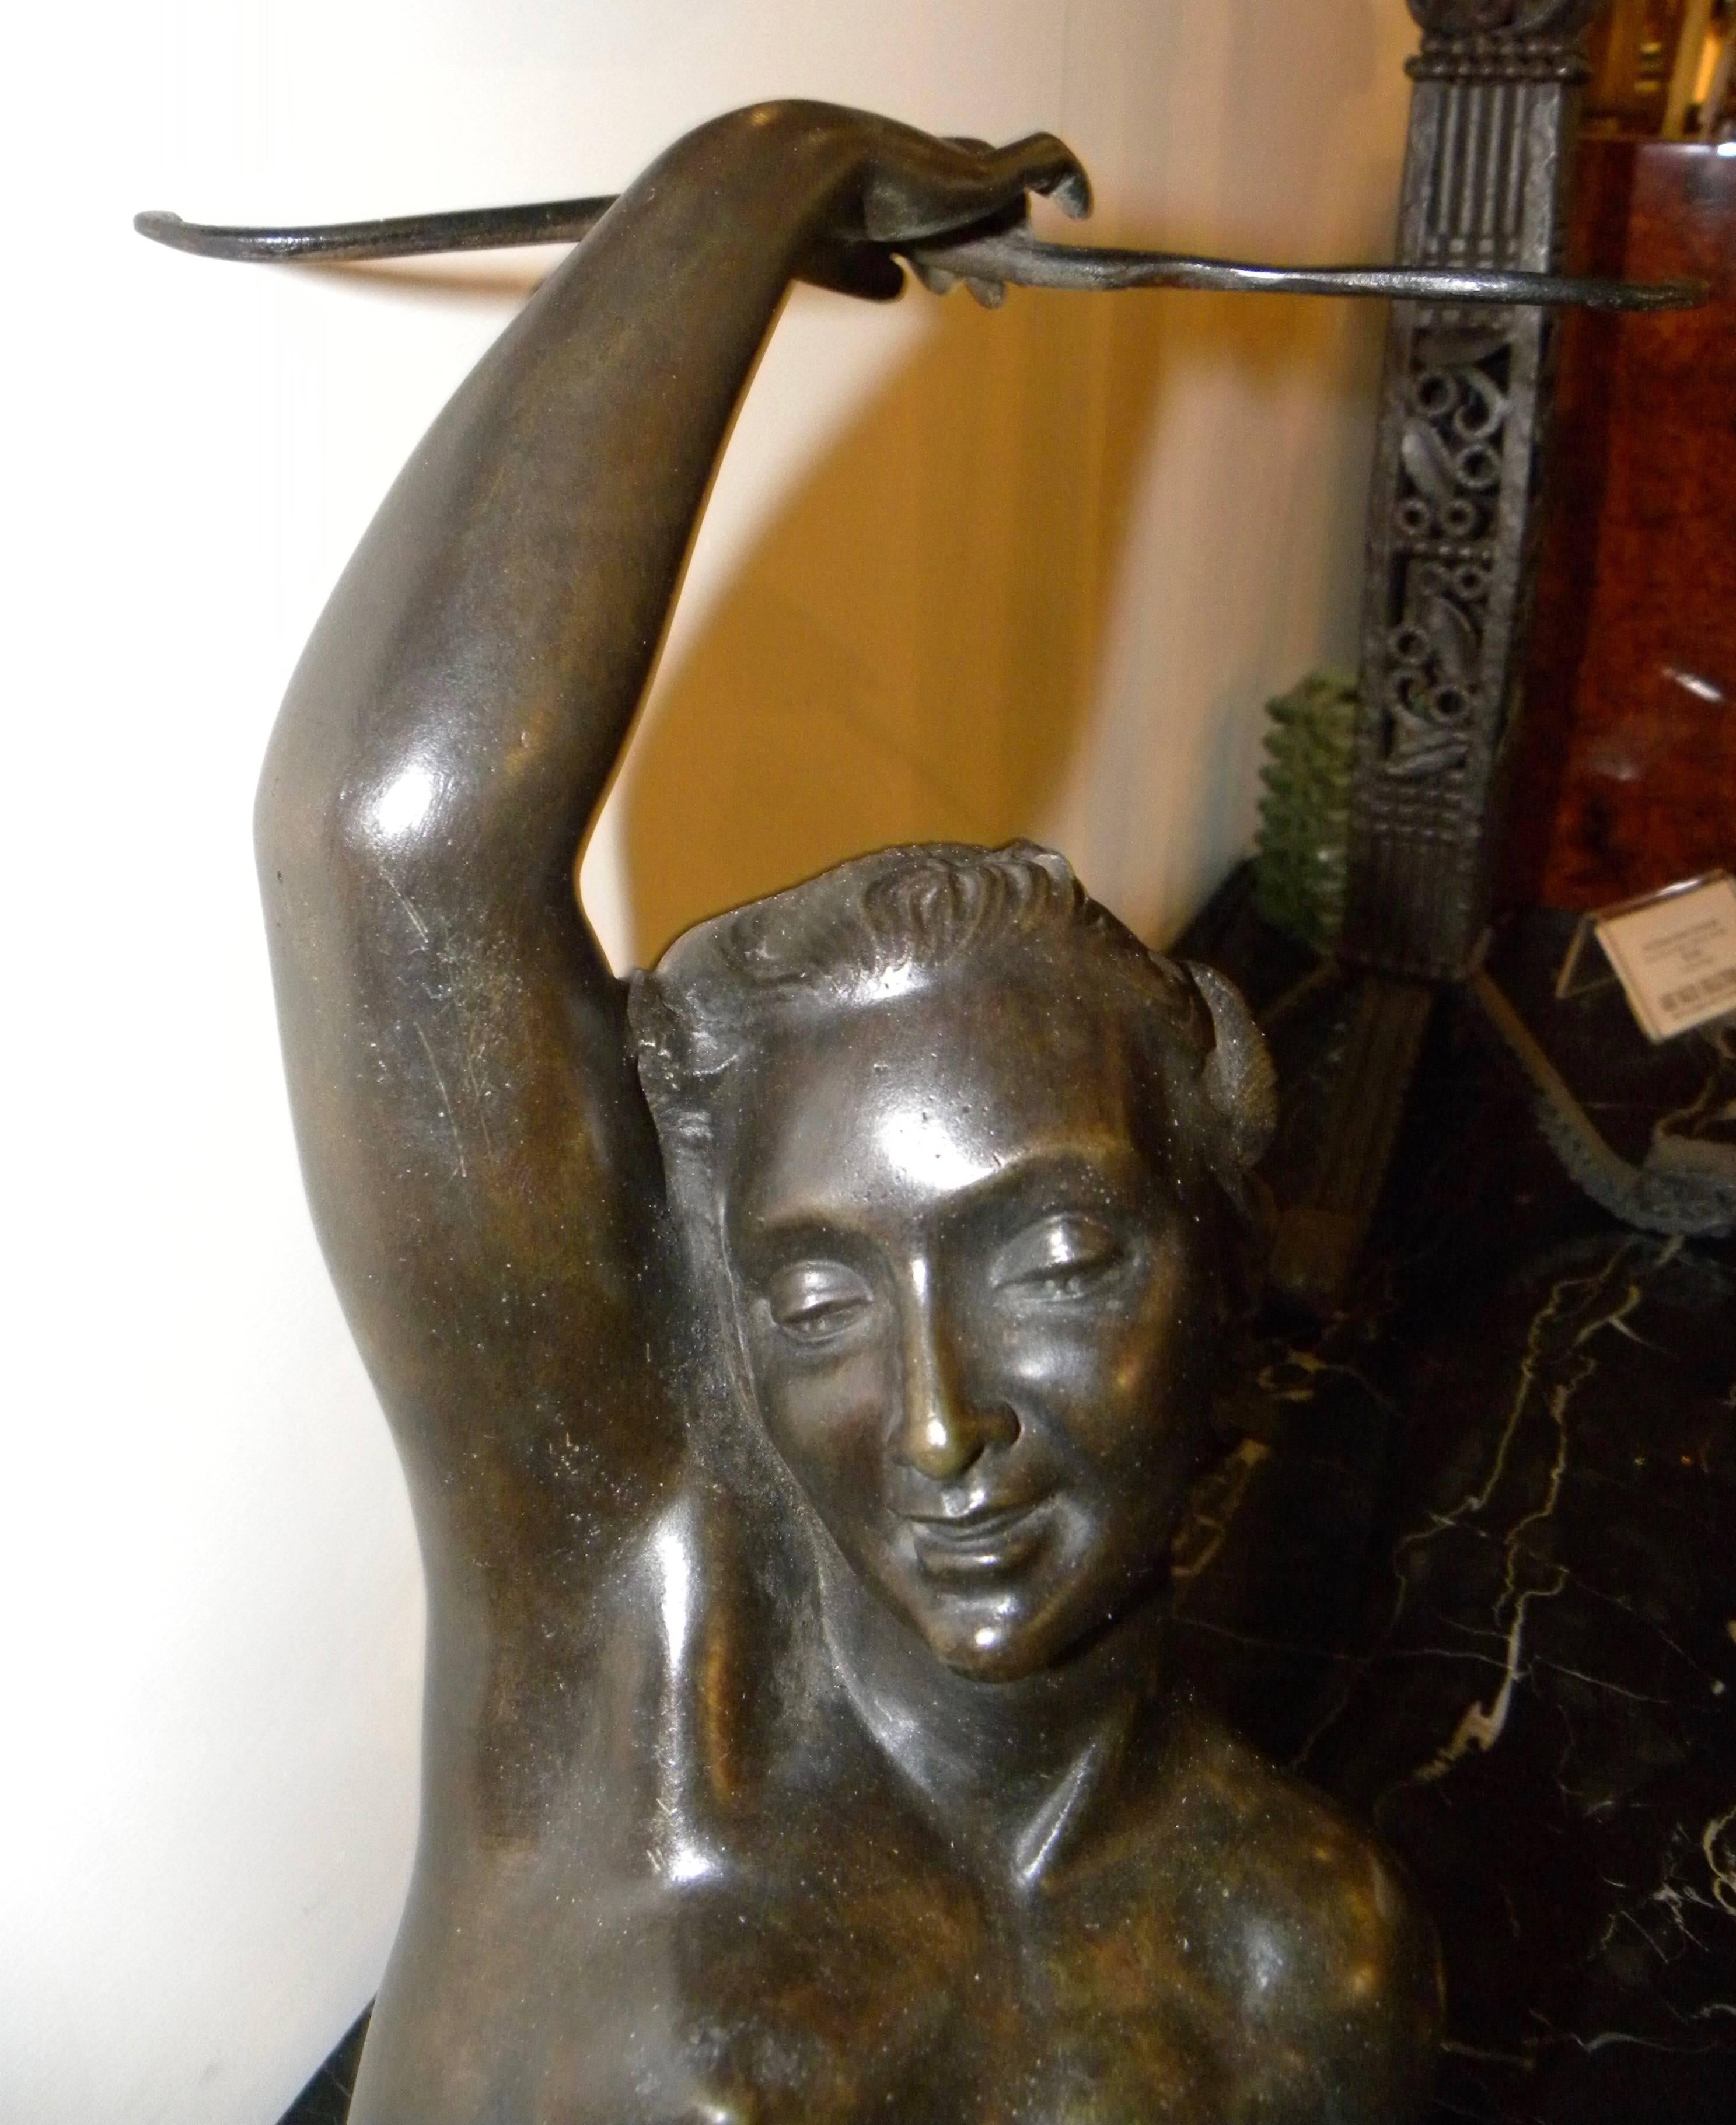 Eine liegende Akt-Bronzeskulptur von Salvatore Melani aus der Zeit des Art déco, die am Ende seiner Karriere entstand, die in den frühen 1920er Jahren begann und 1934 im Alter von 32 Jahren endete. Die heitere und sinnliche Pose wird durch ihre